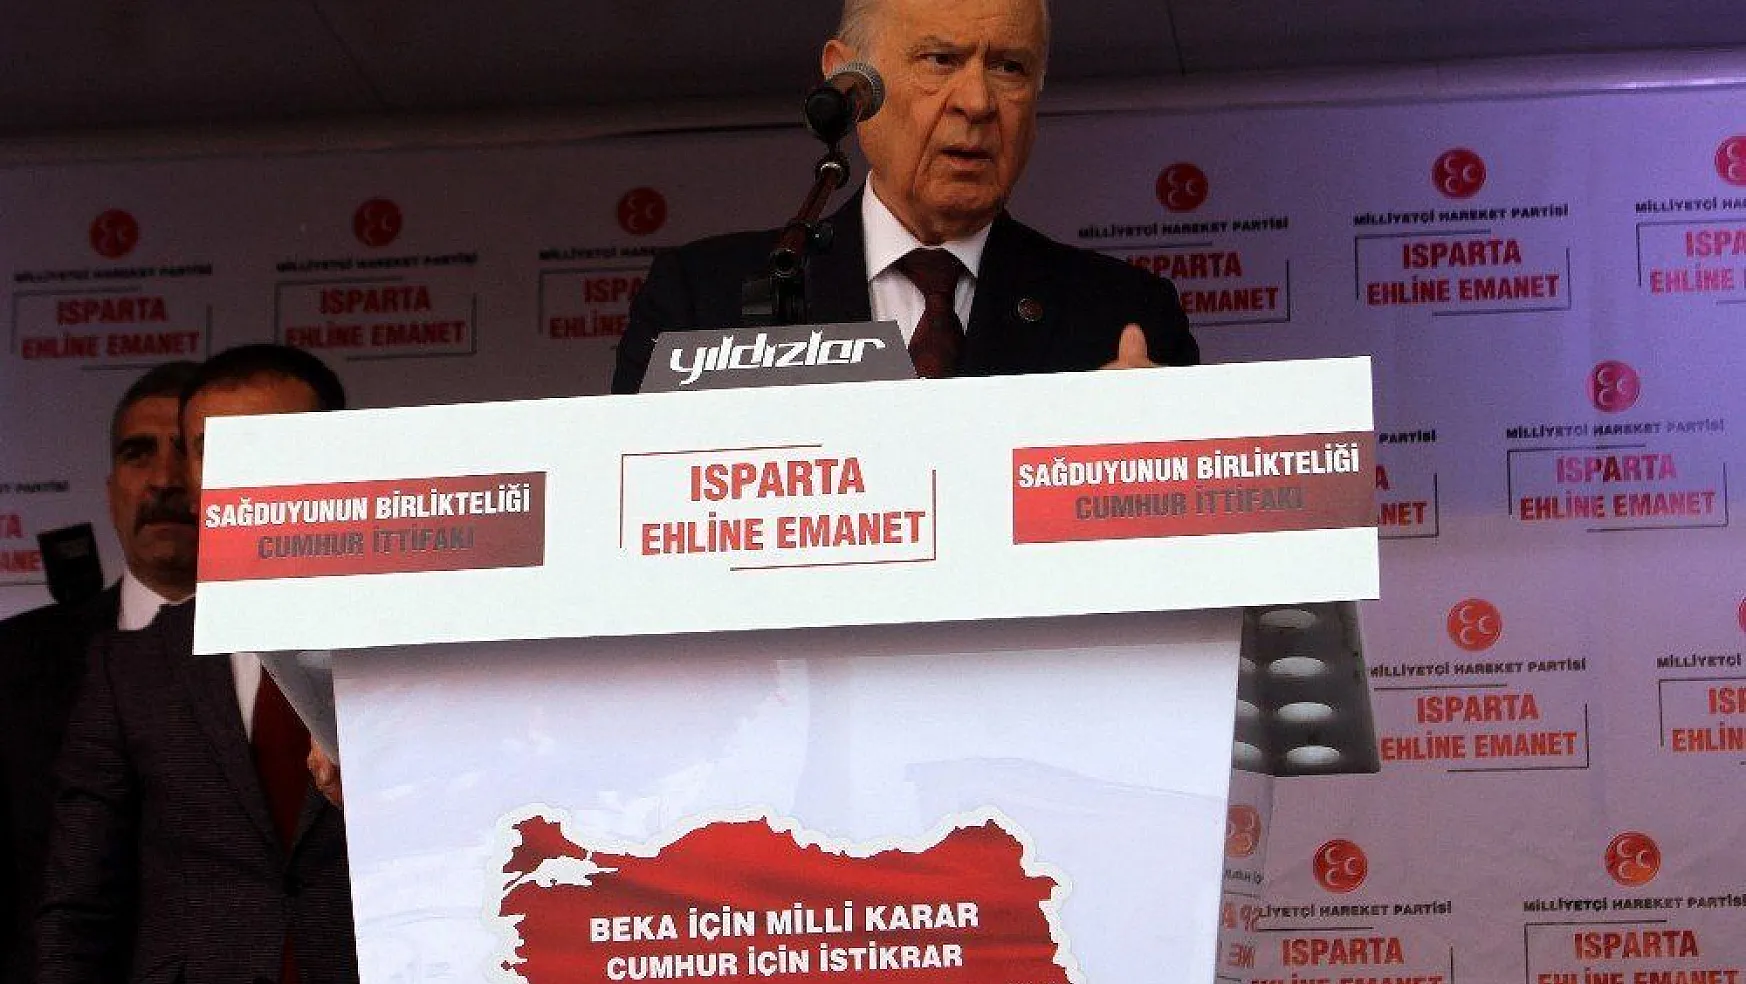 MHP Lideri Devlet Bahçeli: 'Türkiye'nin karşısında puslu bir ittifak kurulmuştur'